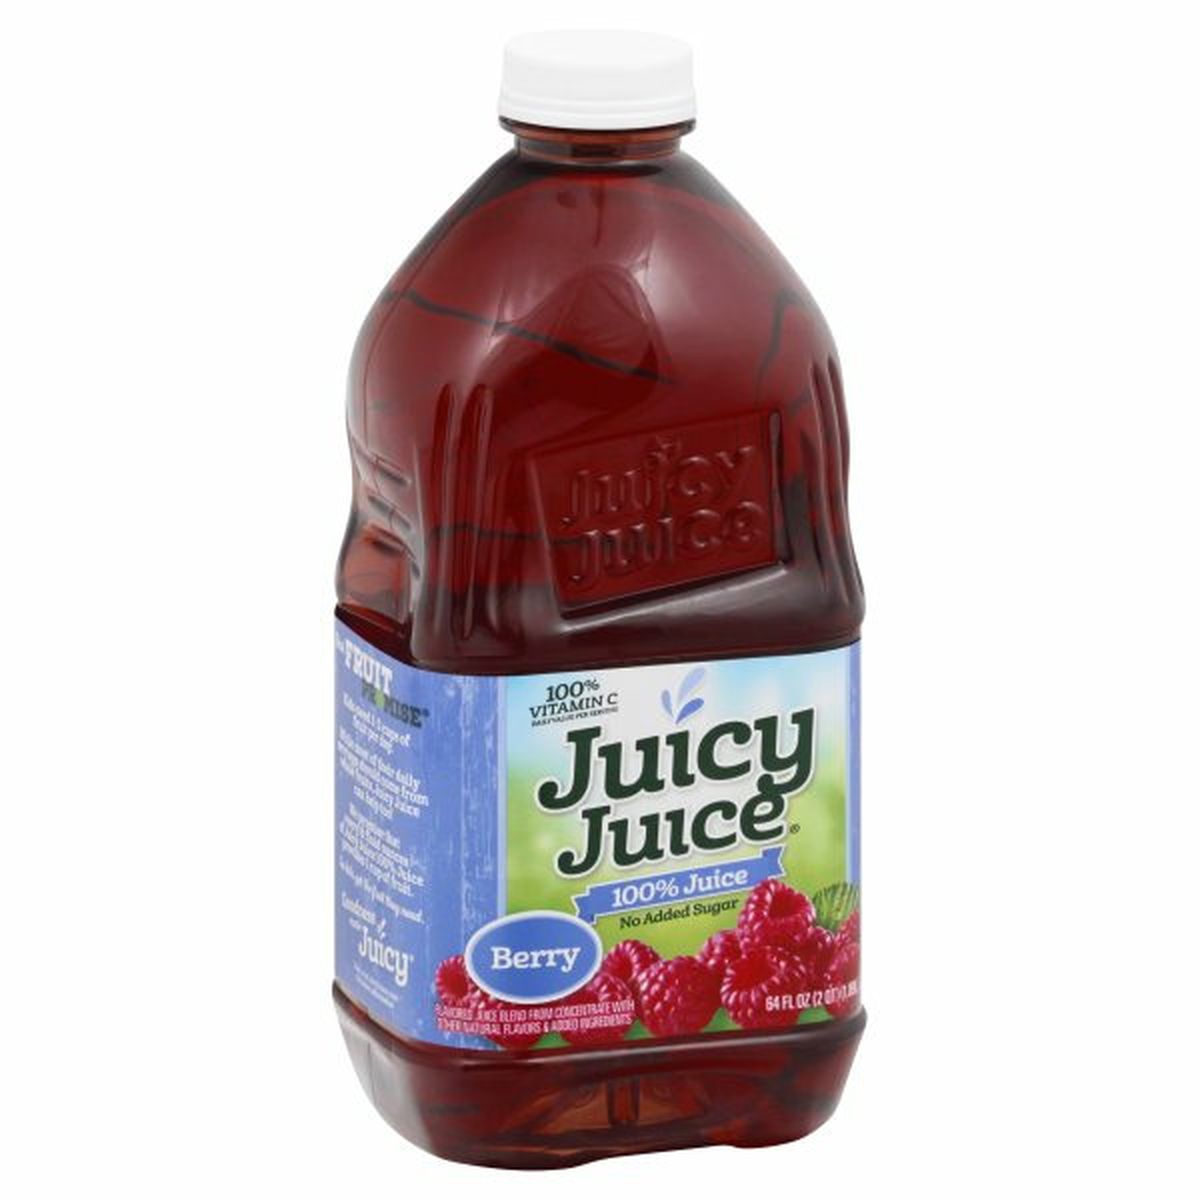 Calories in Juicy Juice 100% Juice, Berry